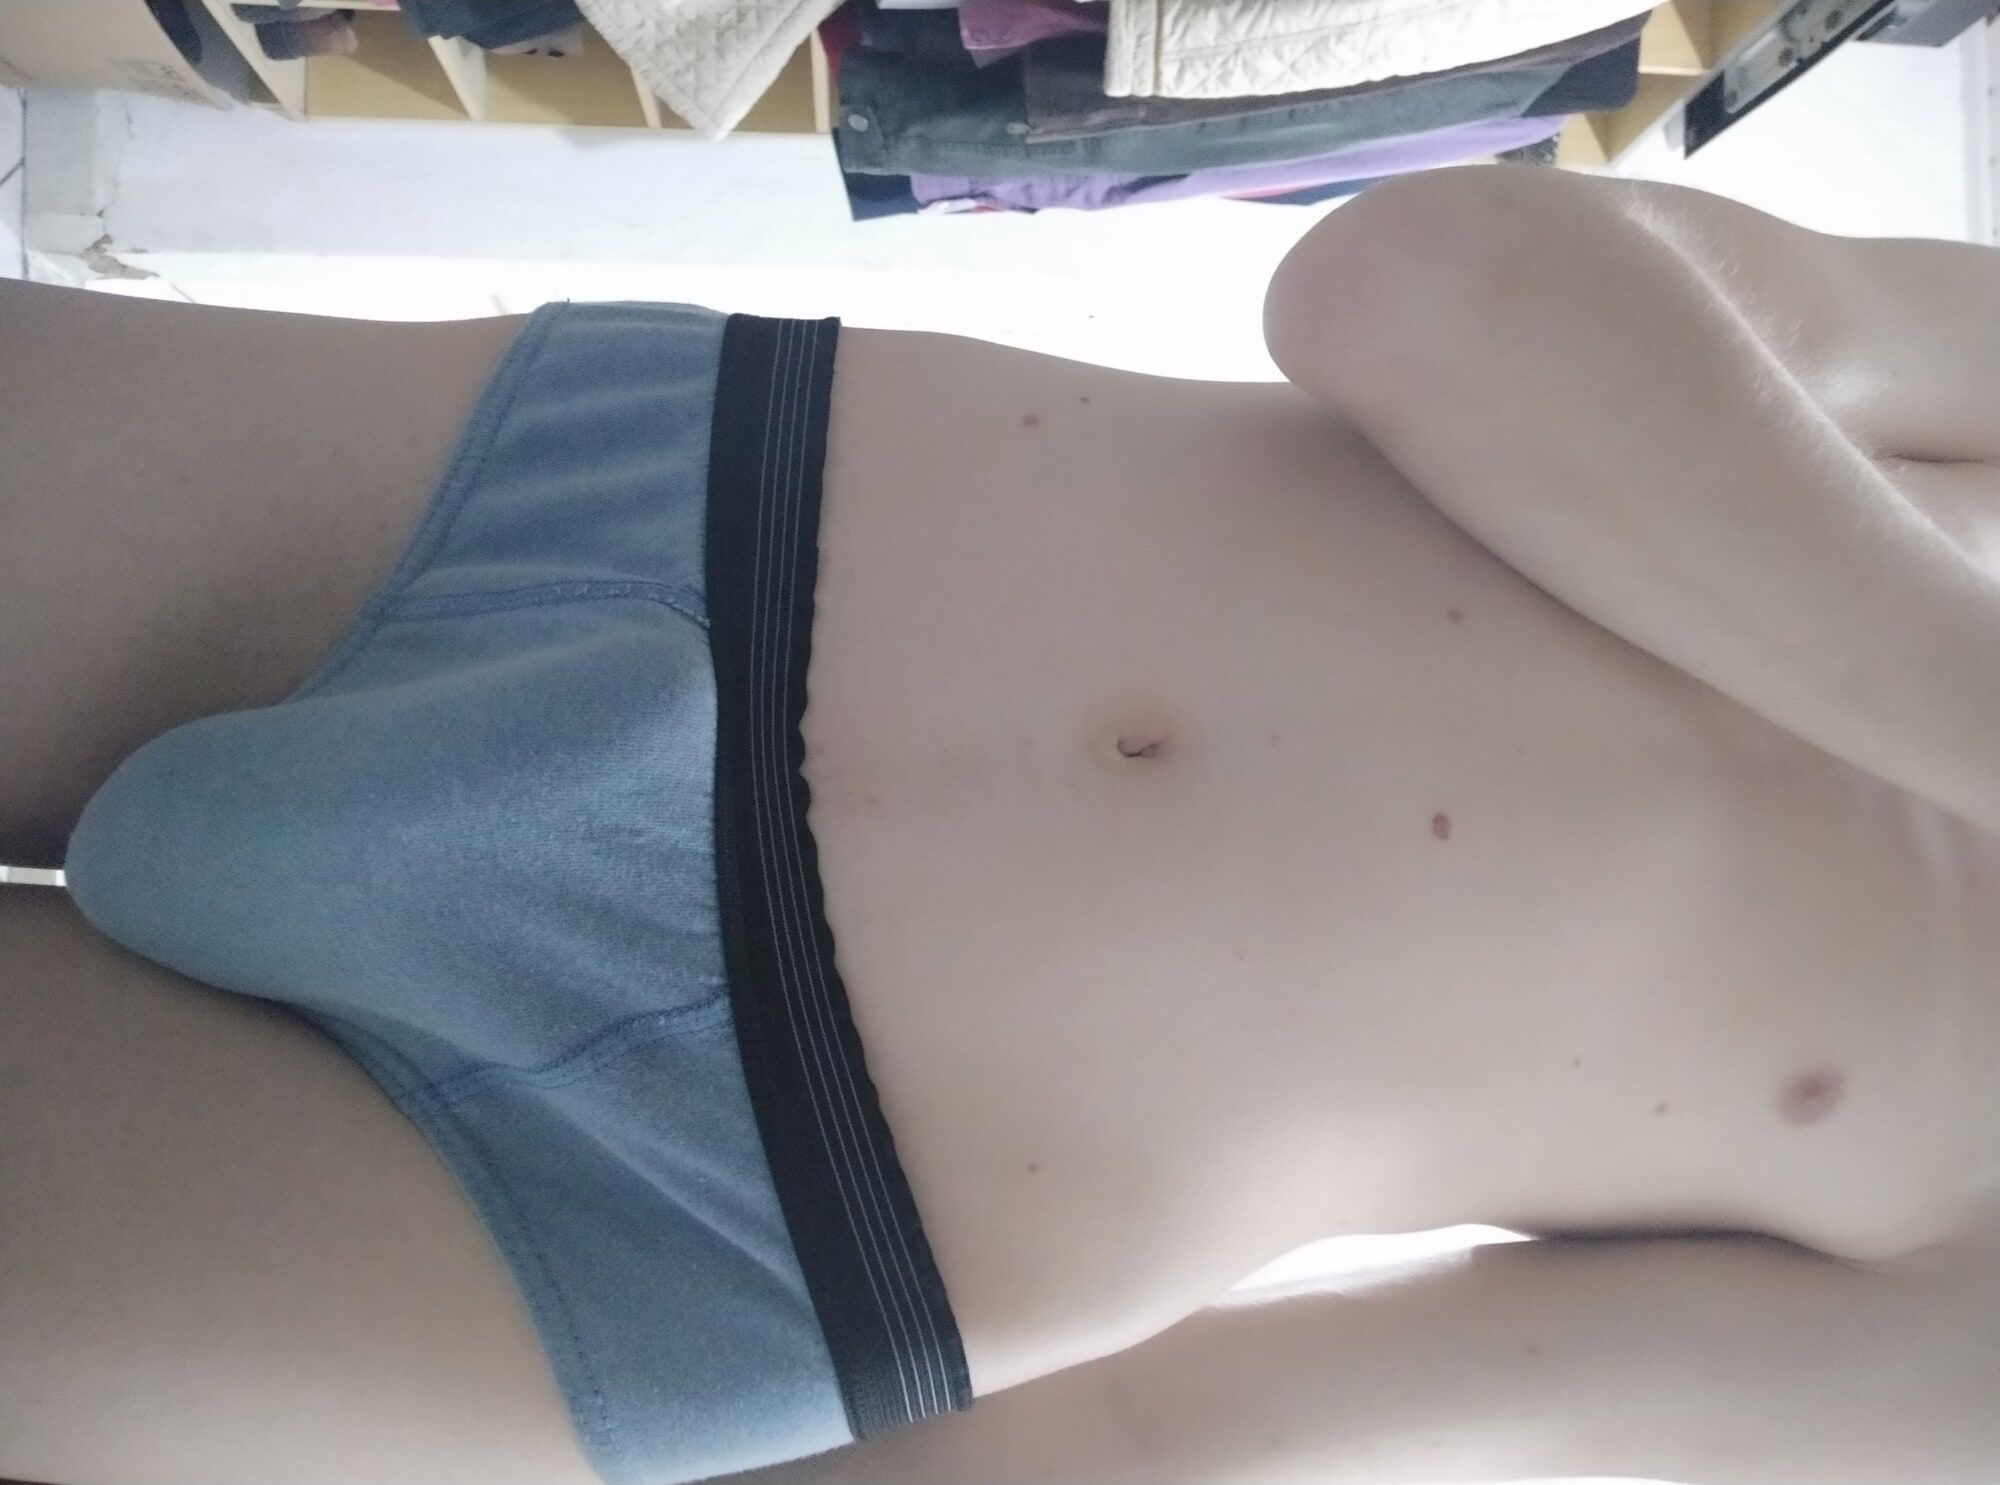 boy showing his body in underwear #13